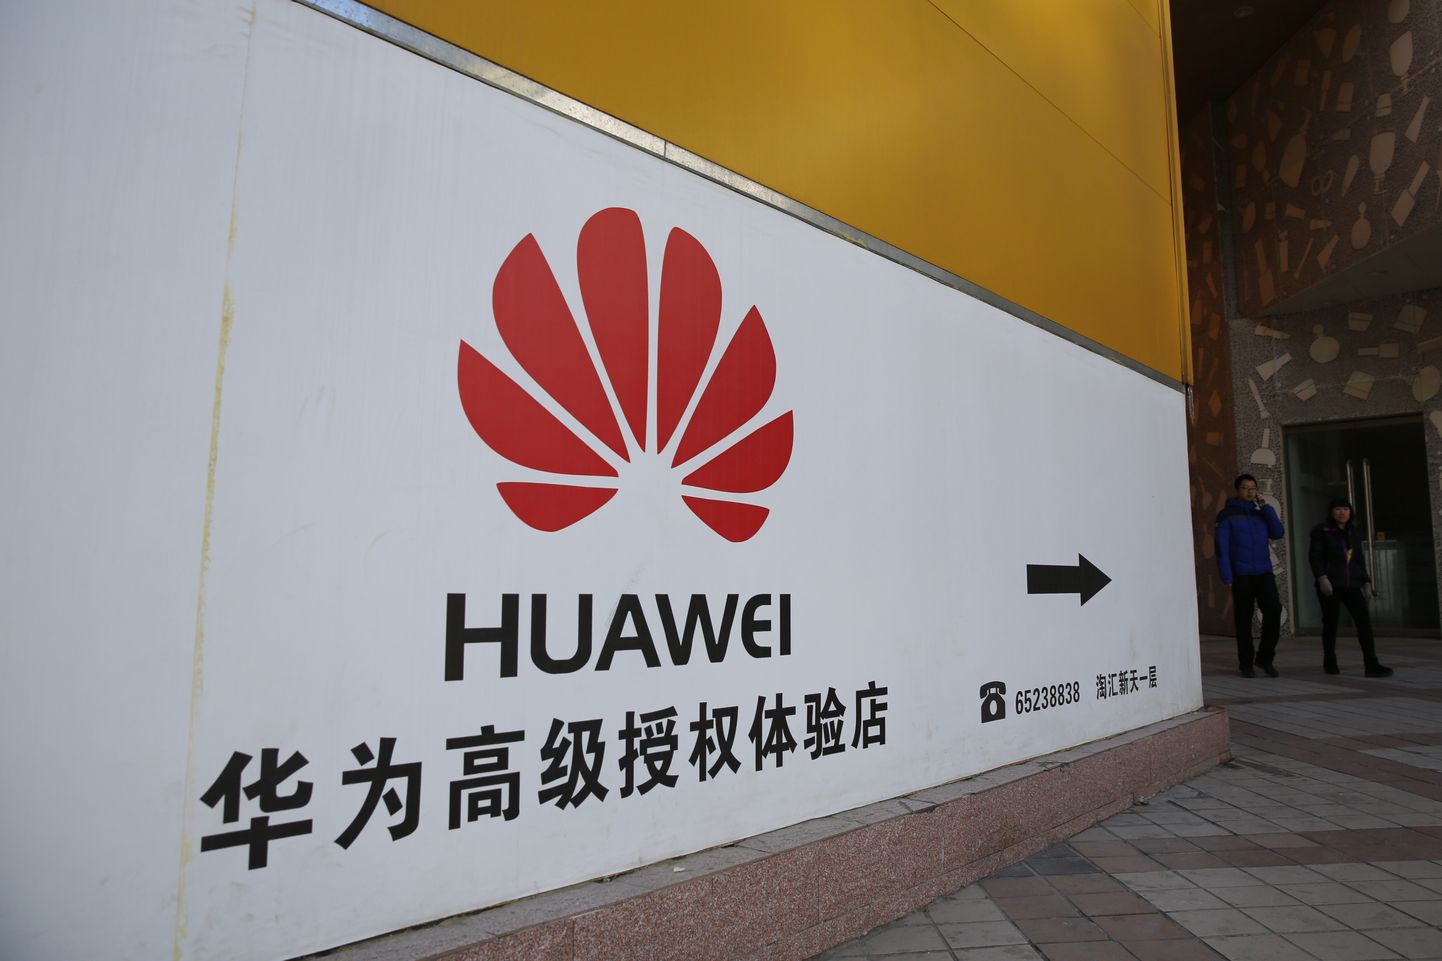 Kanadalaste kinnipidamine Hiinas on tõenäoliselt seotud Hiina telekomifirma Huawei finantsjuhi Meng Wangzhou vahistamisega Kanadas.